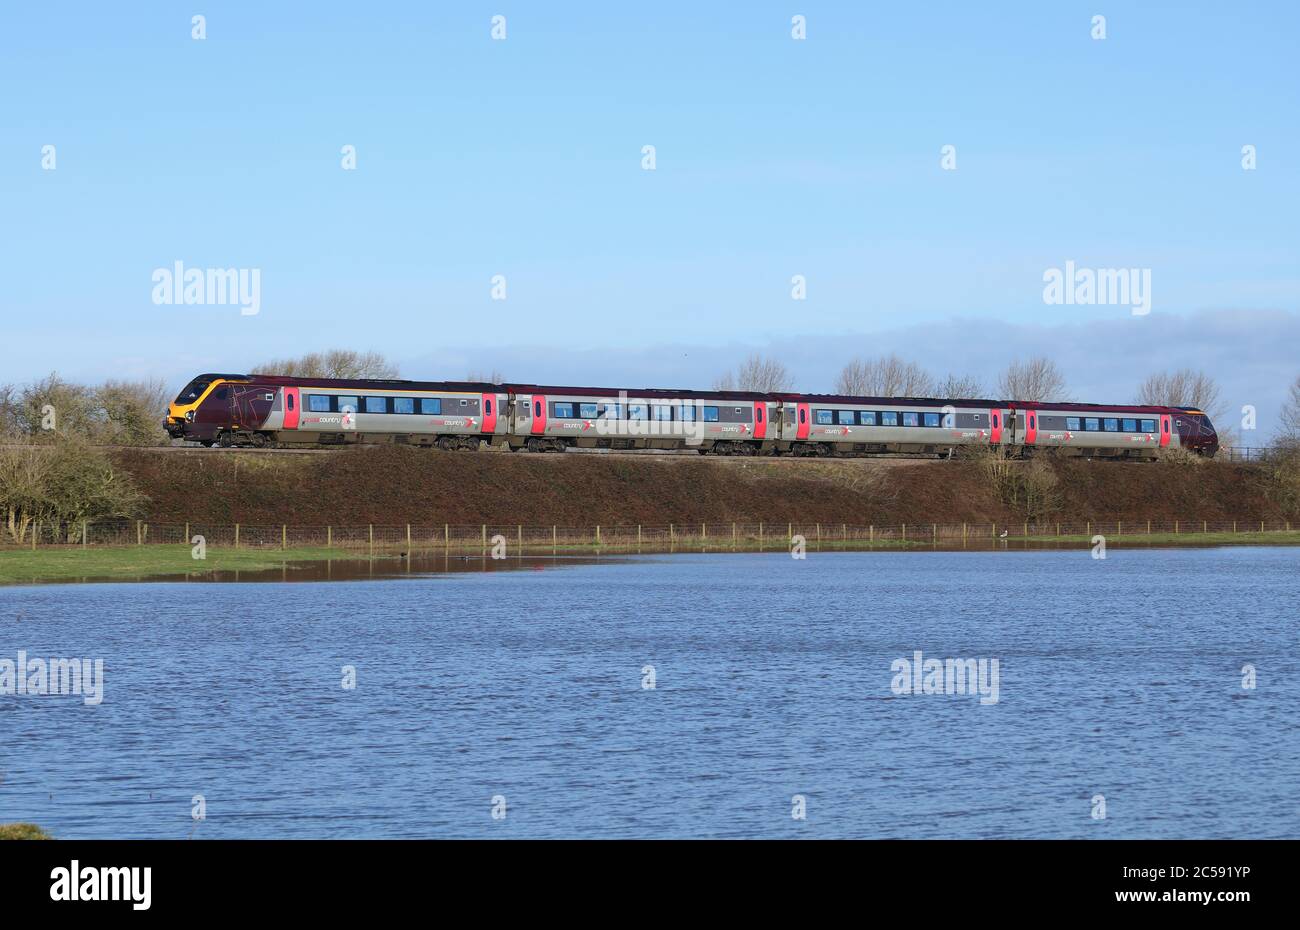 Treno passeggeri Voyager diesel-elettrico di classe 220, che passa per terra allagata a Staffordshire, Inghilterra, Regno Unito. Foto Stock